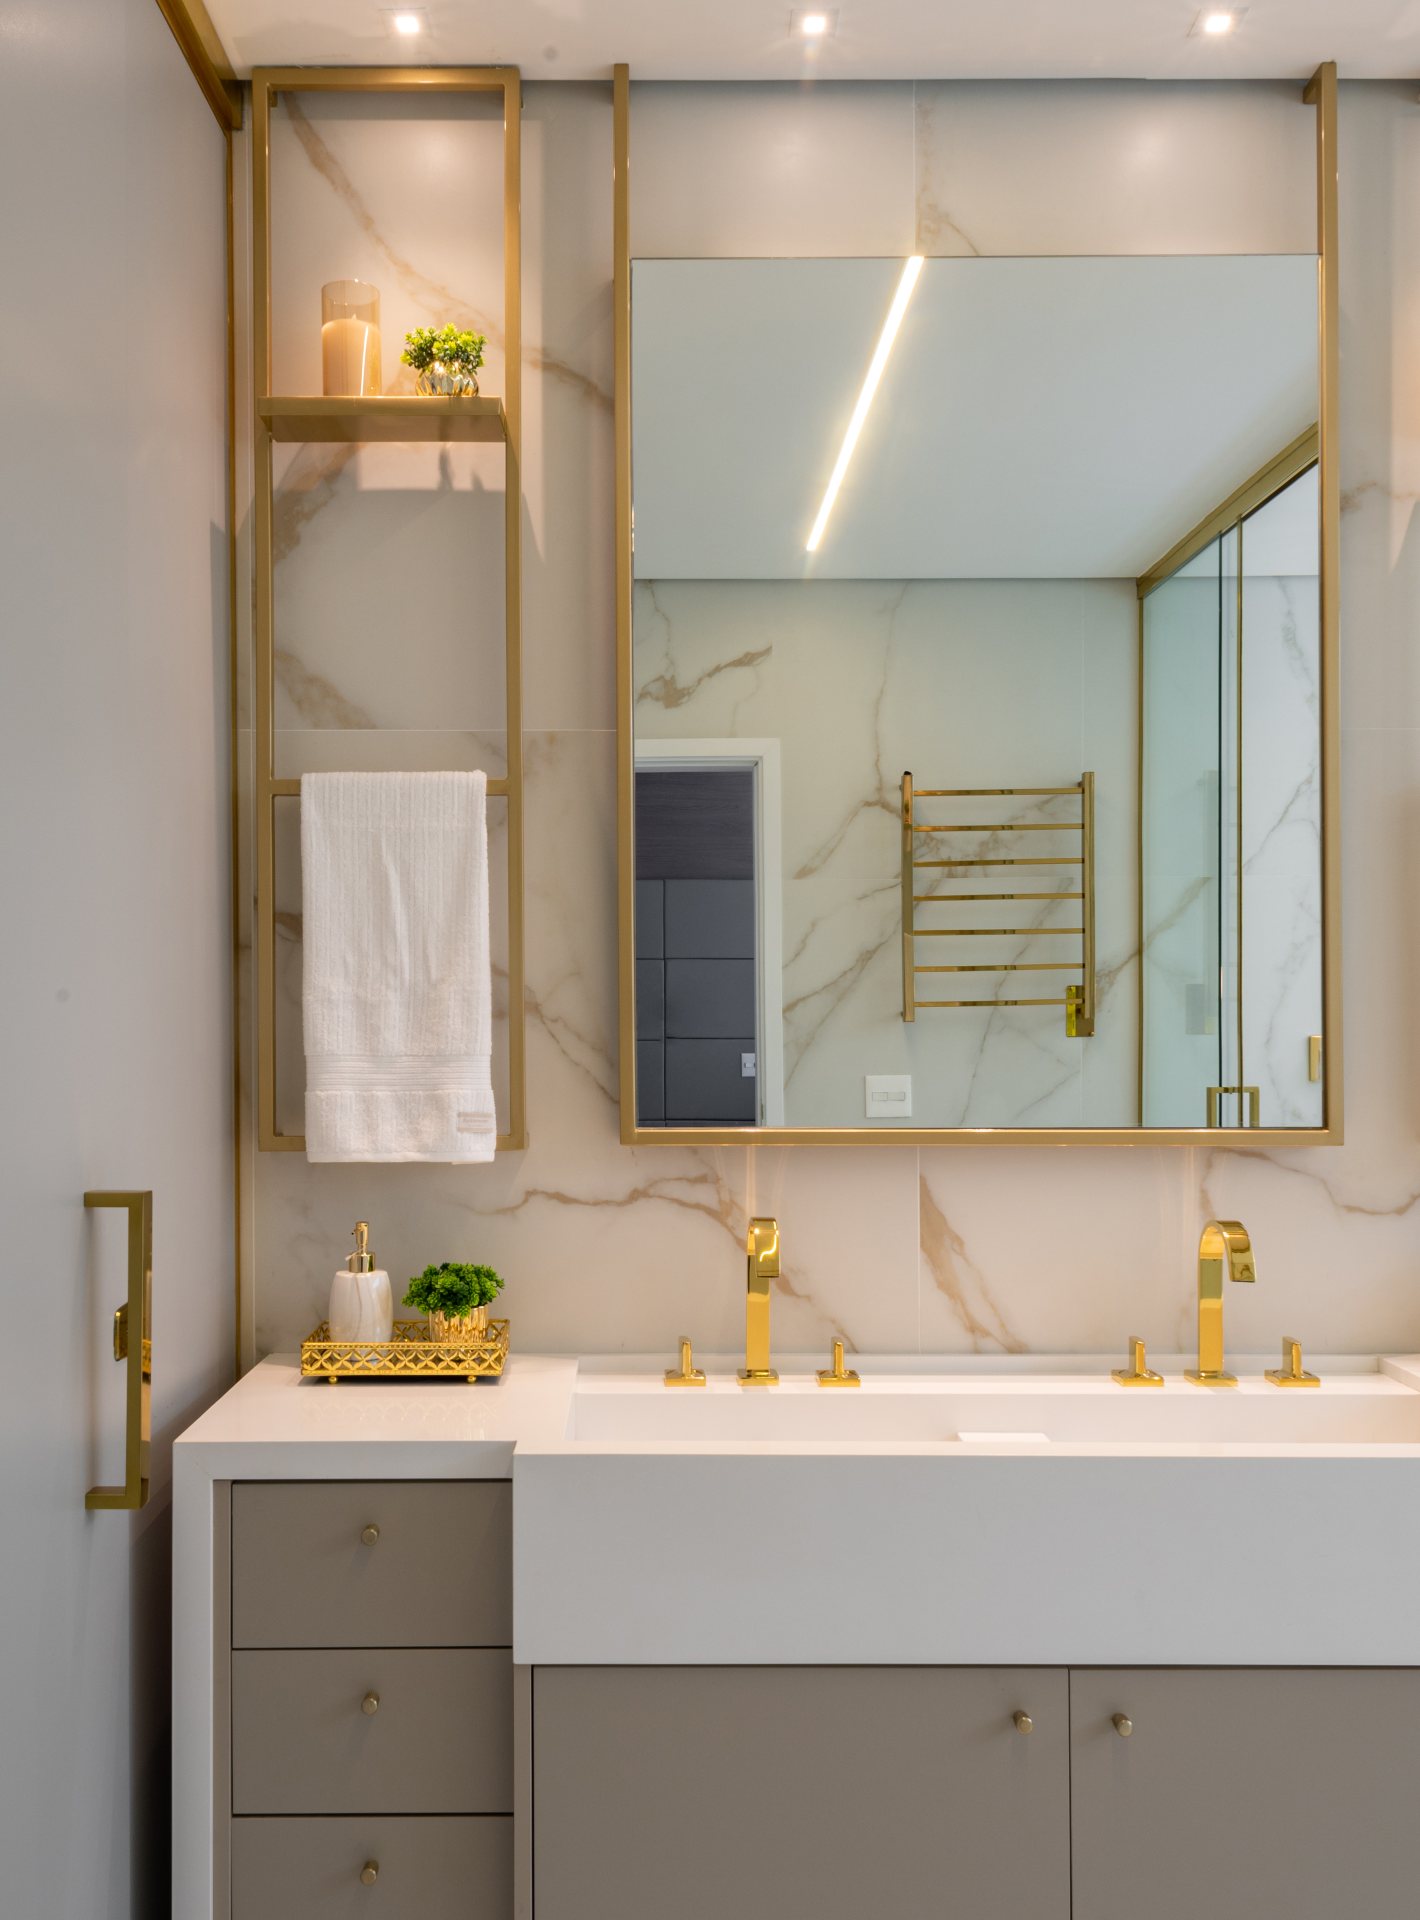 Banheiro elegante com detalhes em mármore e dourado, toalheiro térmico dourado